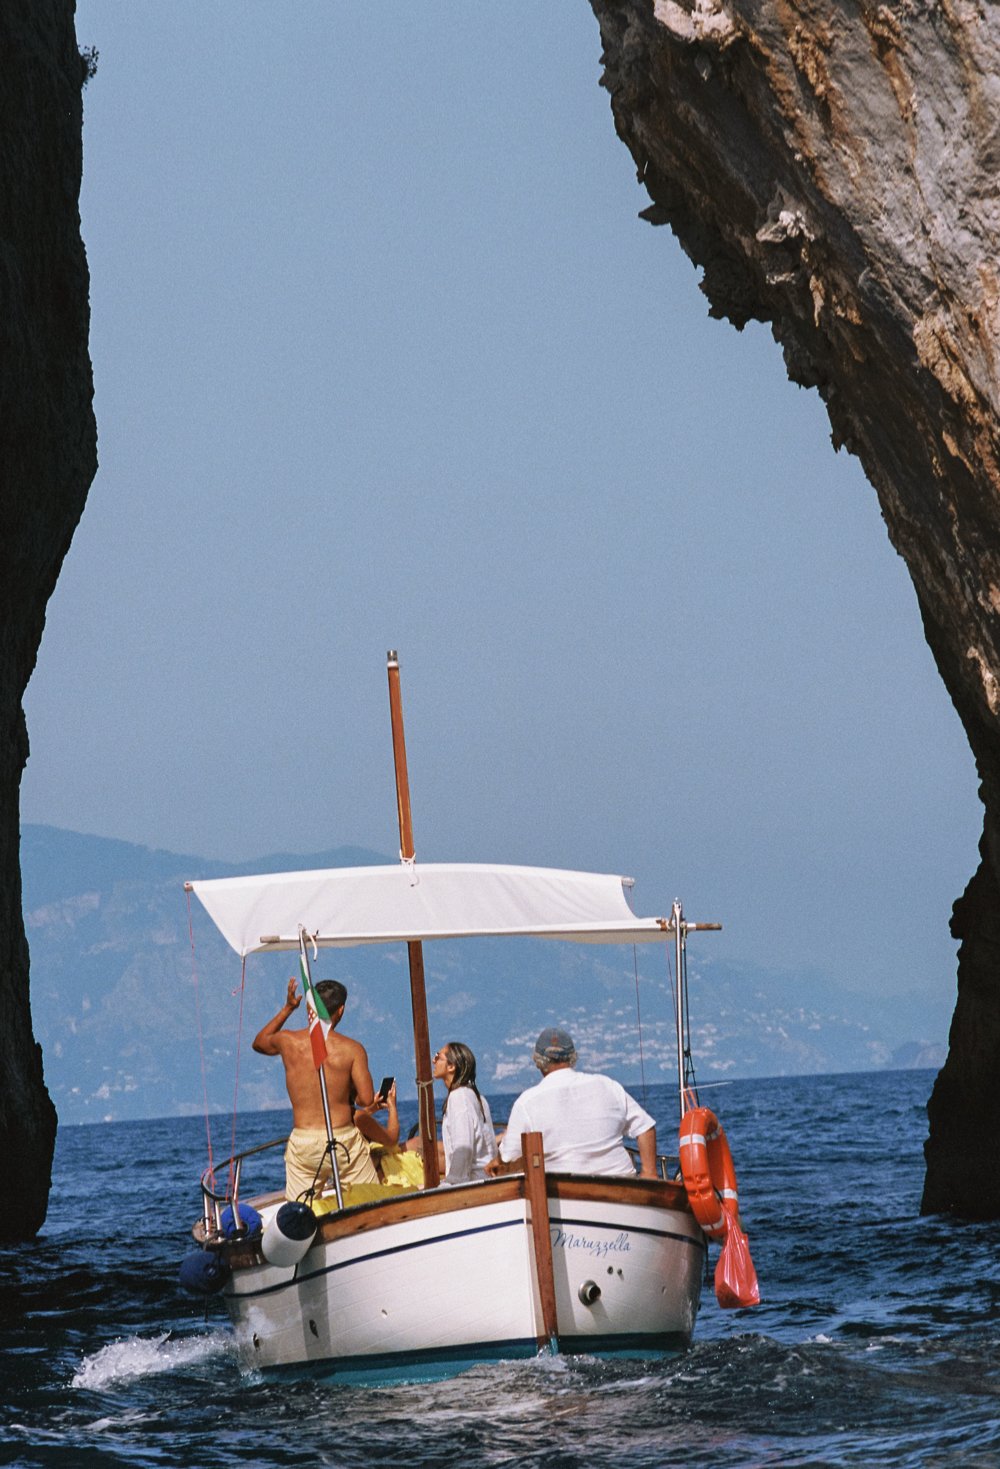 Faithfull_Capri_scenes_02.jpg